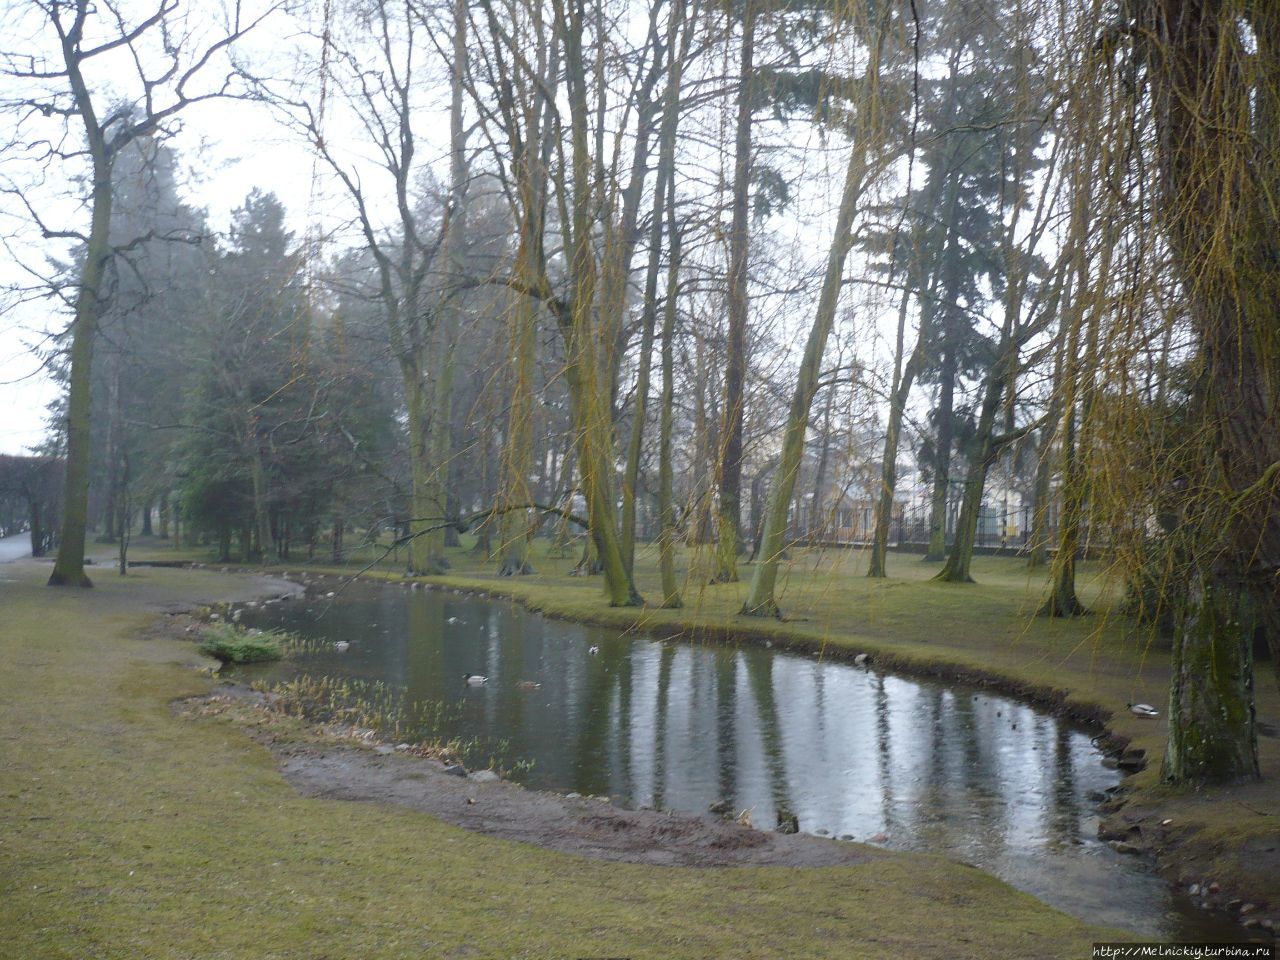 Оливский парк Гданьск, Польша